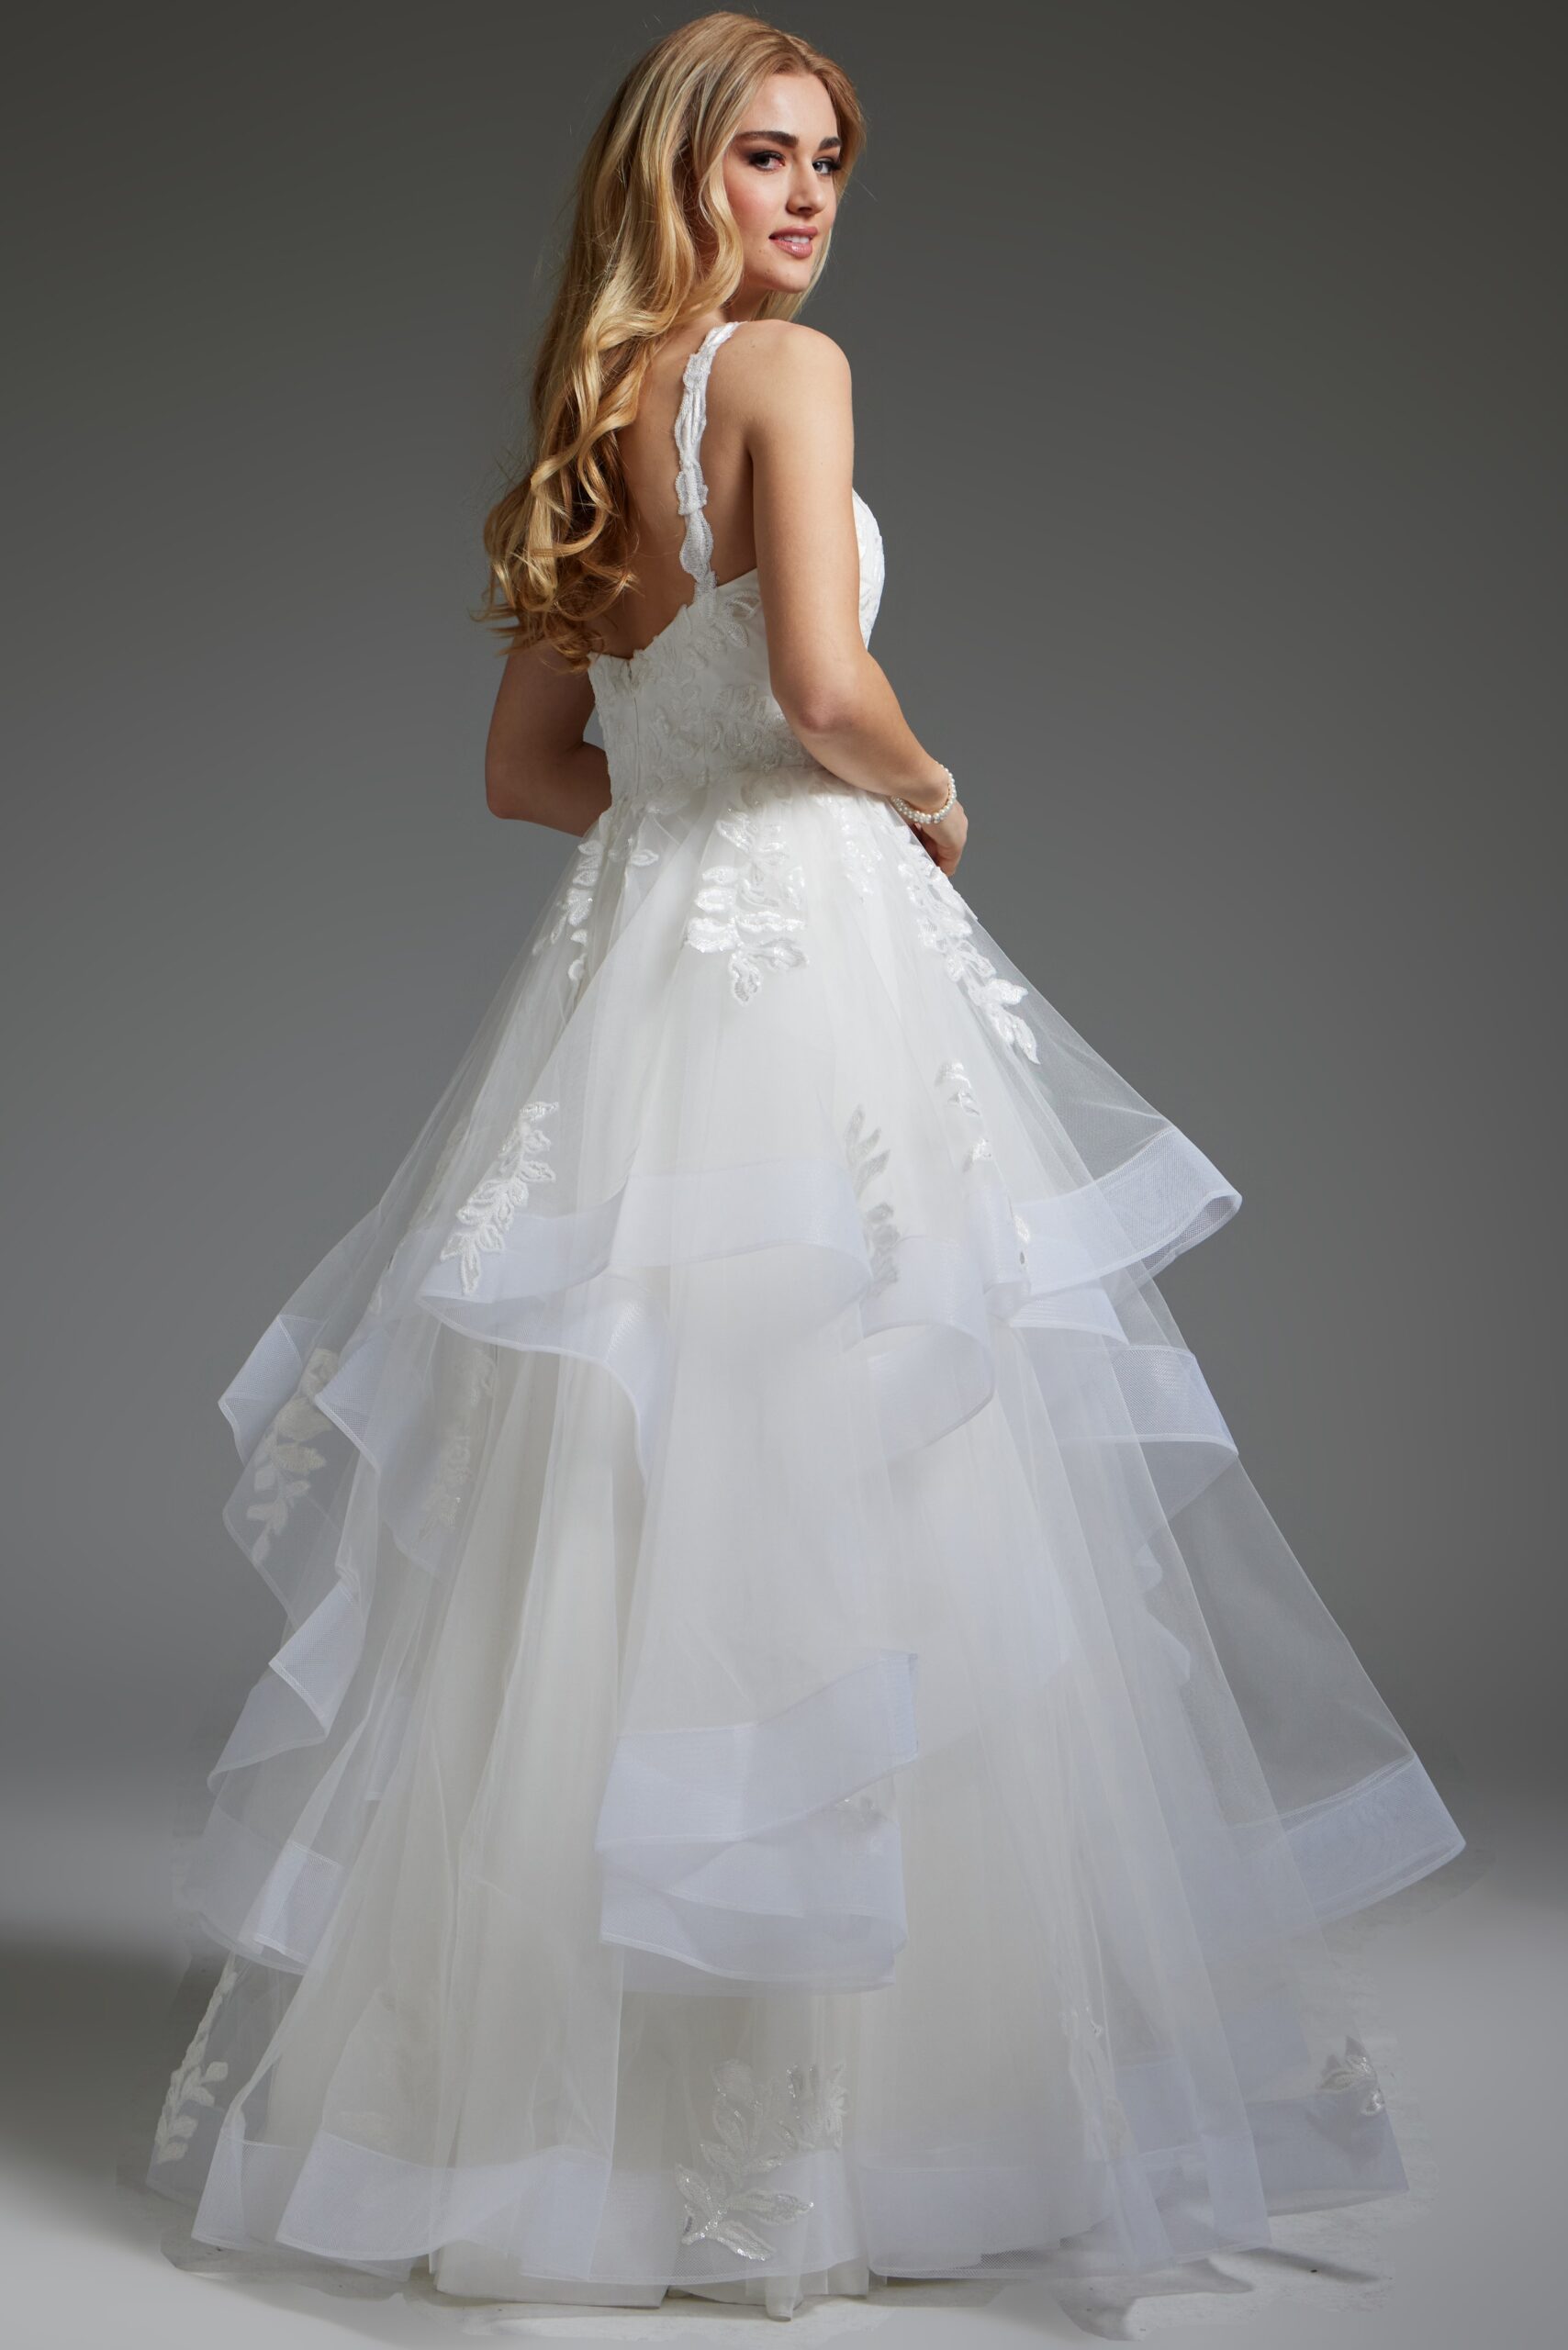 Off White Layered Skirt Tulle Bridal Dress  JB41002